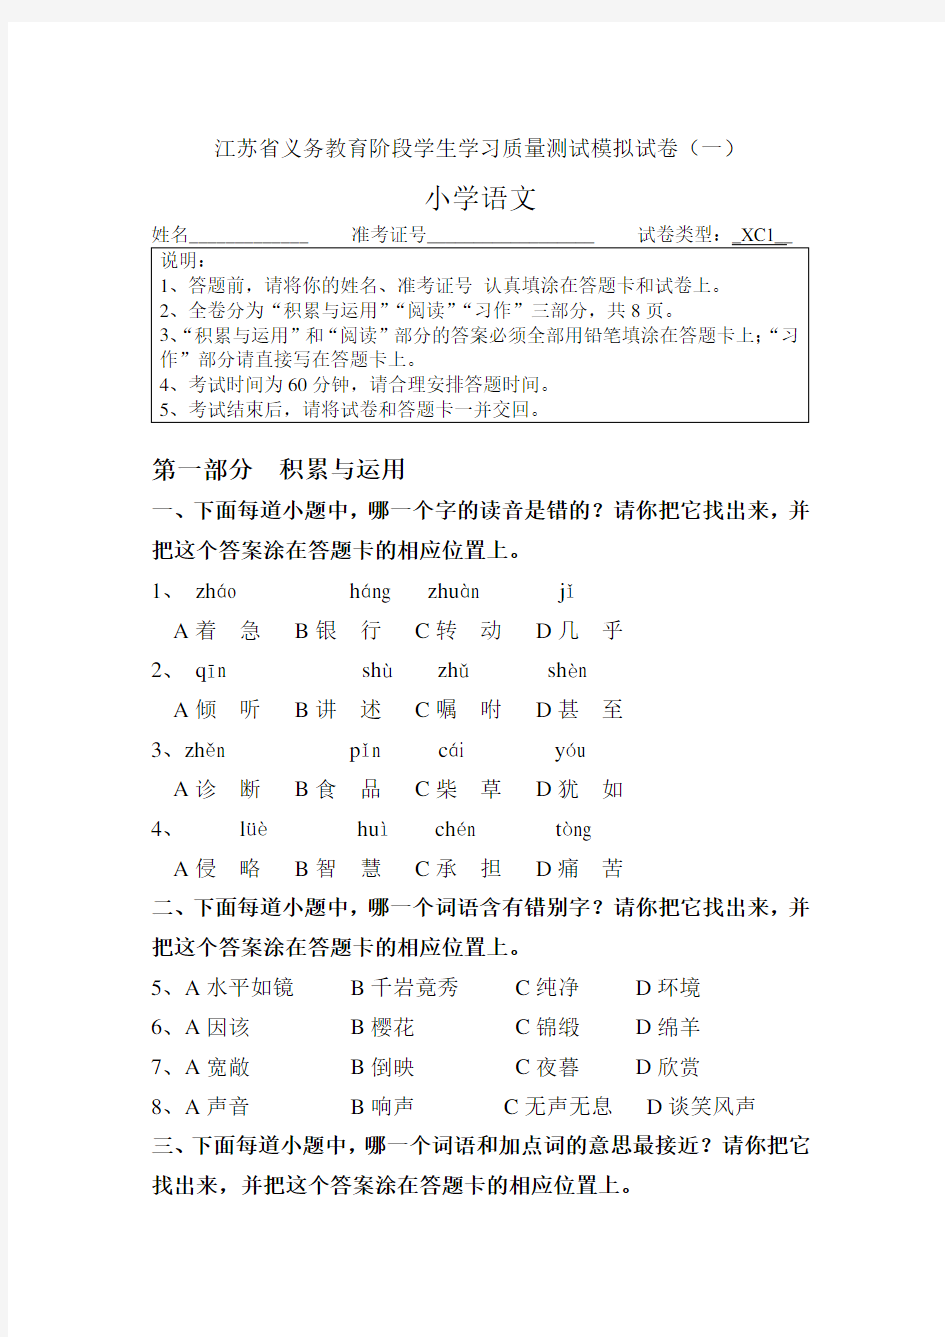 江苏省三年级语文质量抽测试卷及答题卡、答案1